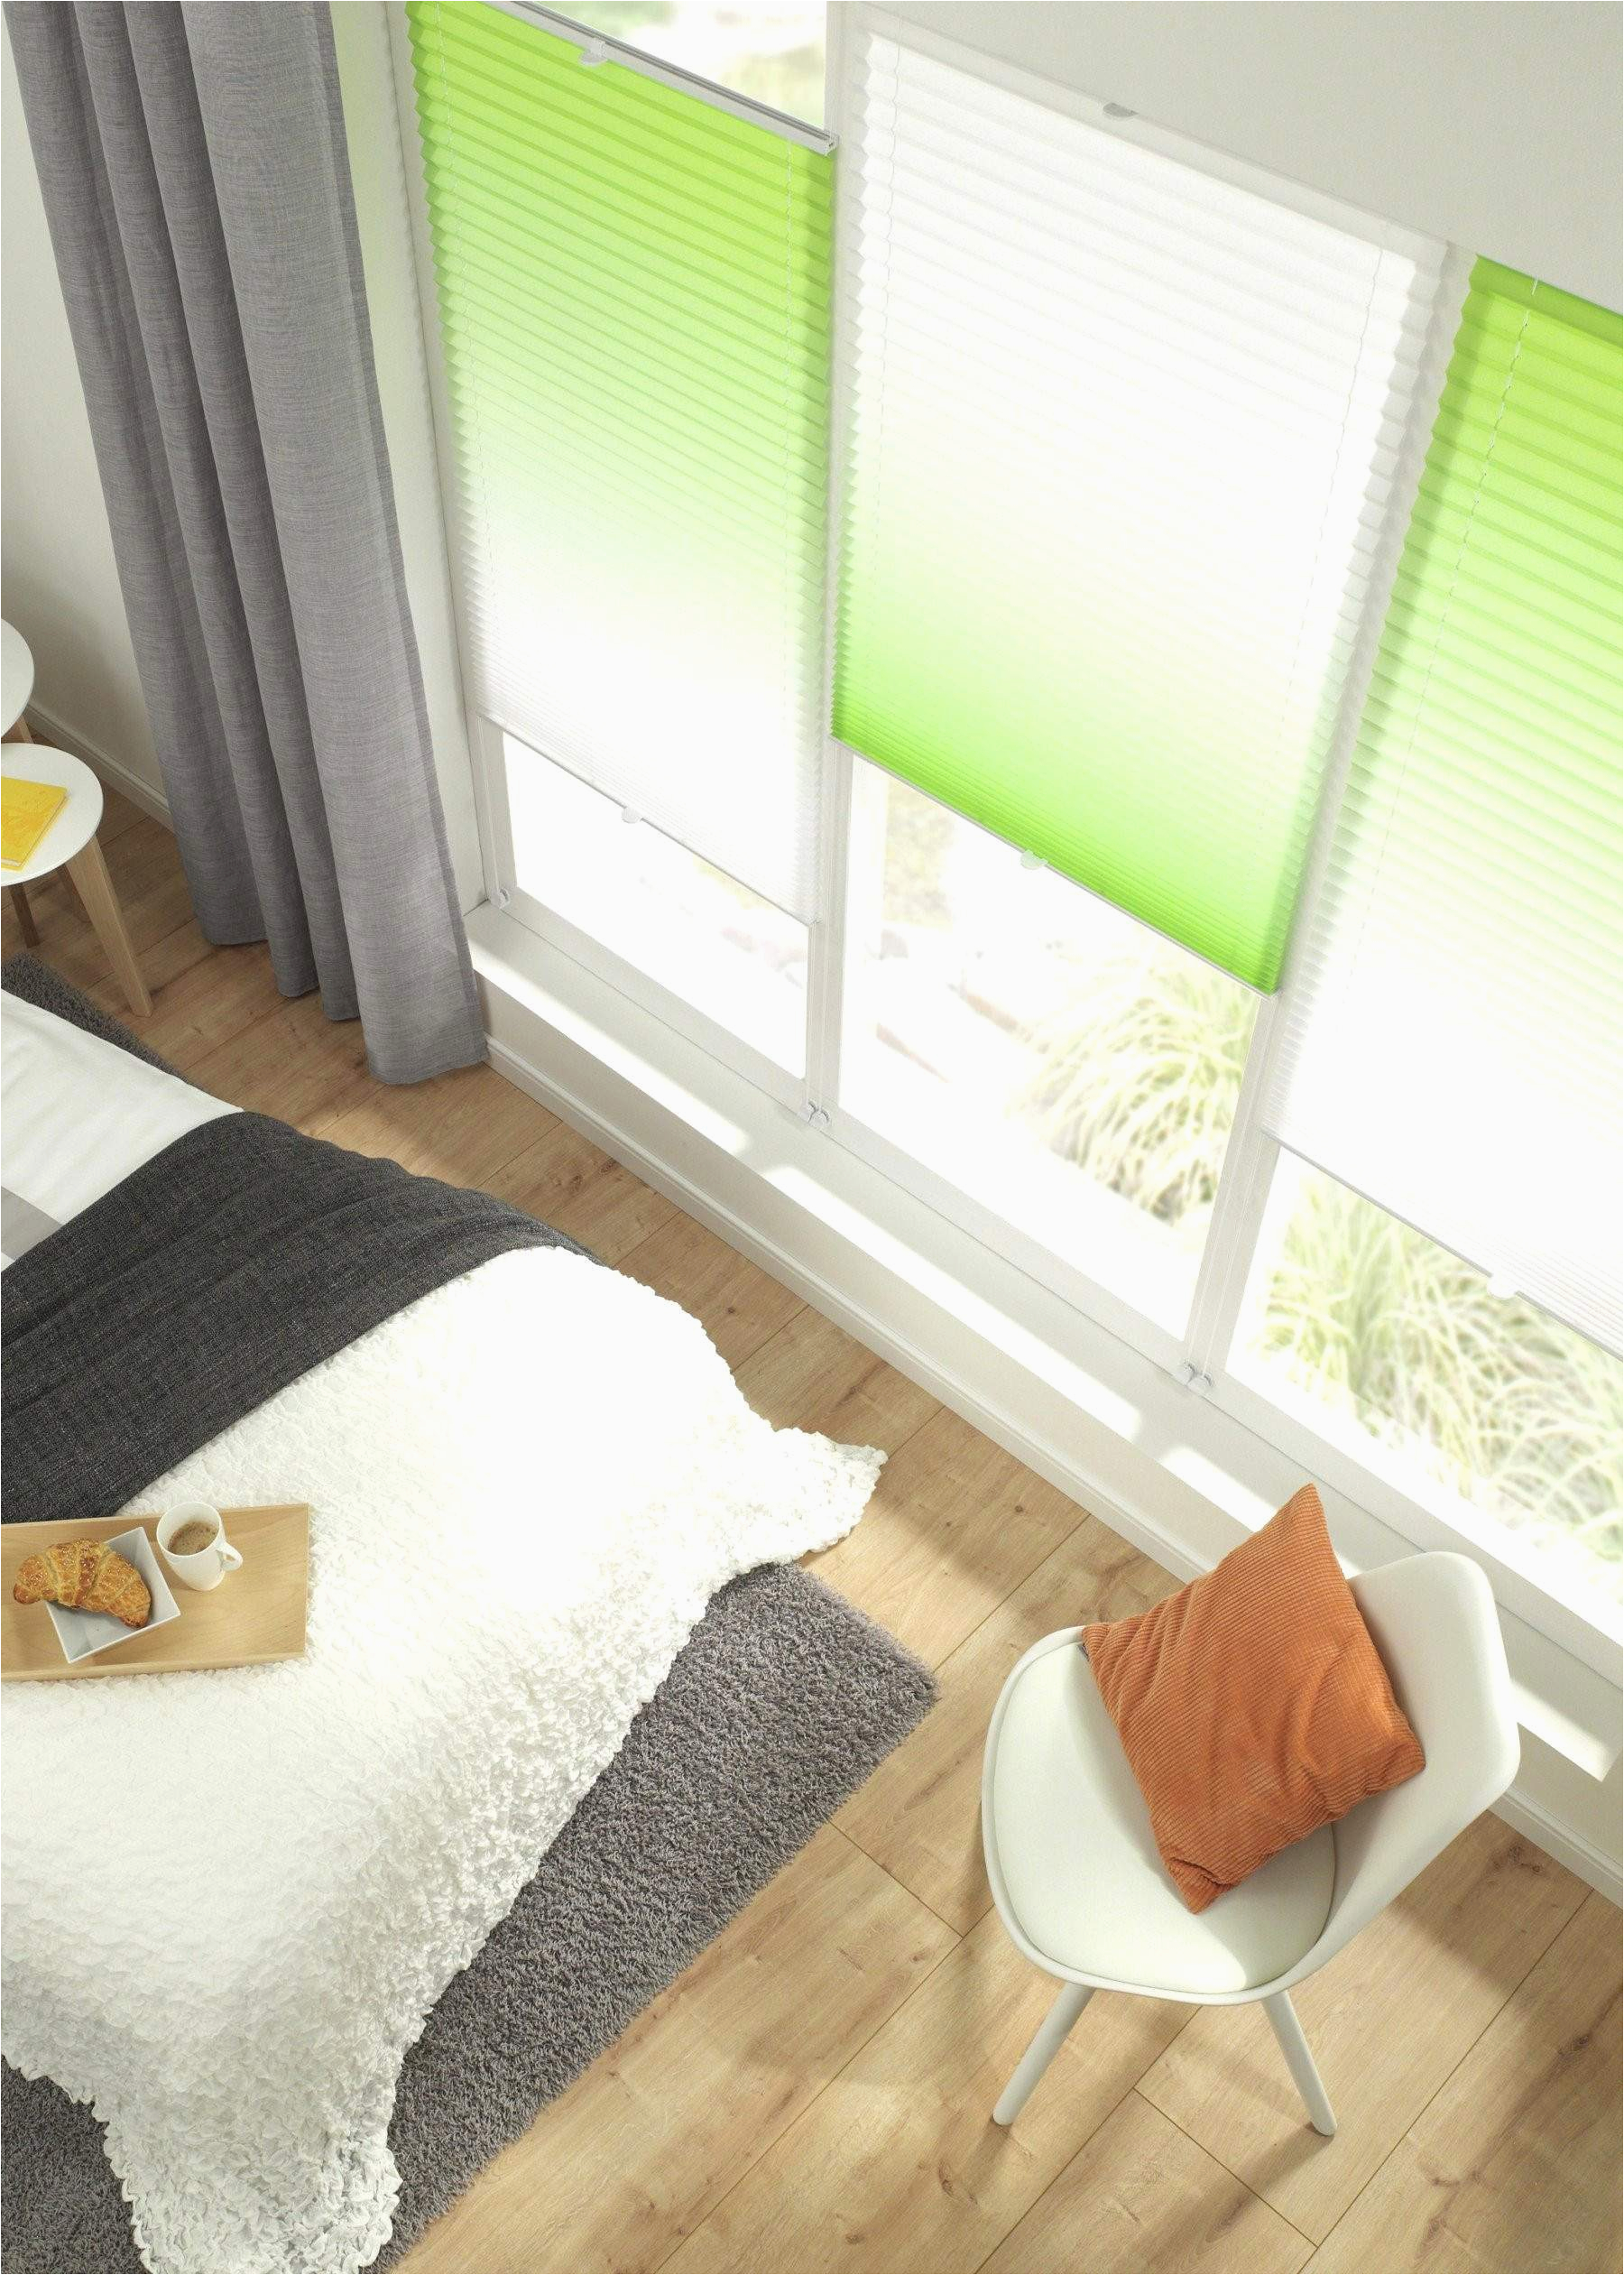 ideen wohnzimmer genial wohnzimmer fenster gardinen neu plissee wohnzimmer 0d design of ideen wohnzimmer